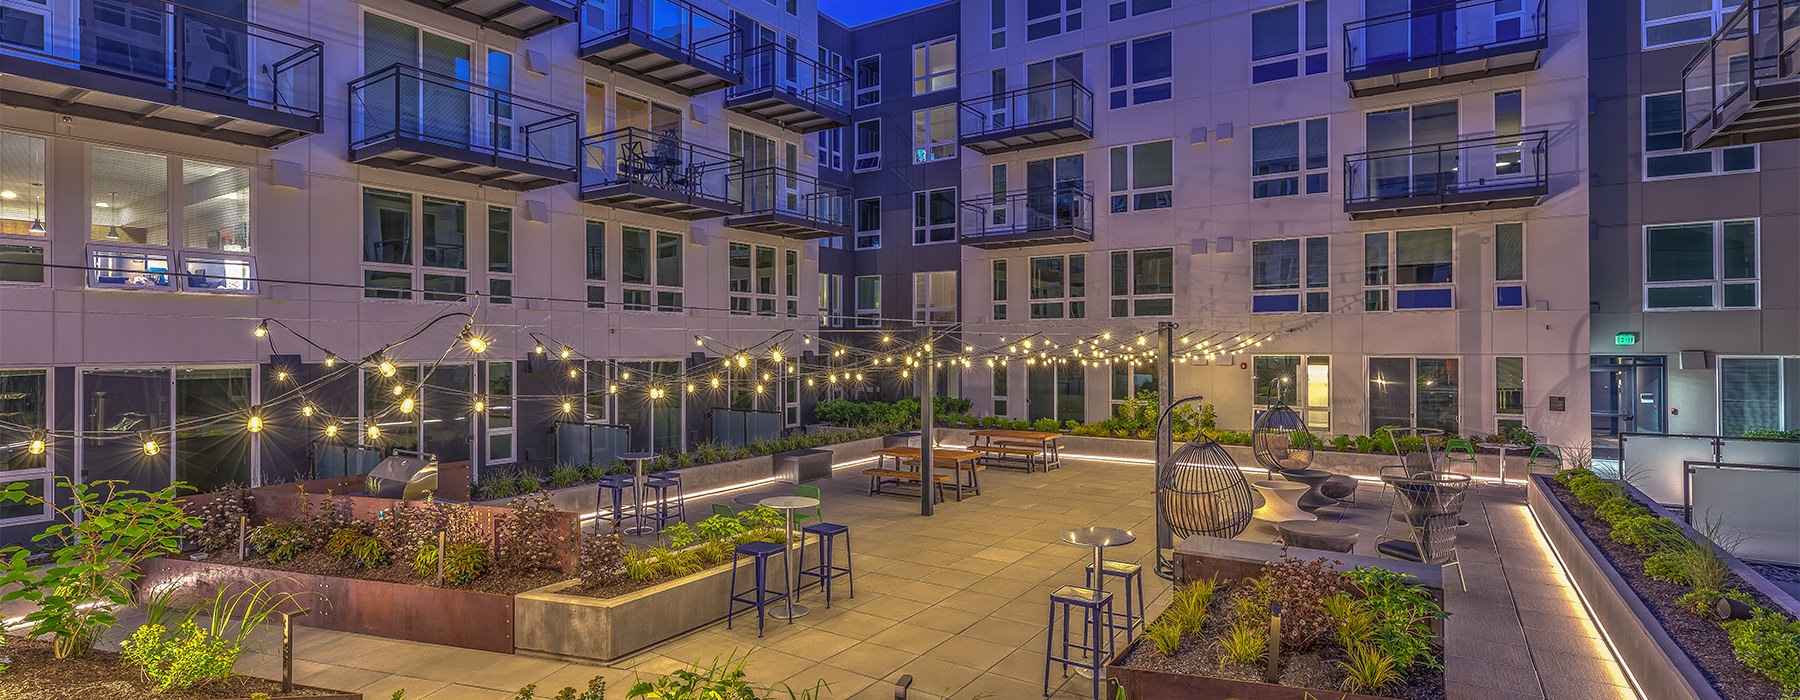 Community Courtyard Lounge at dusk